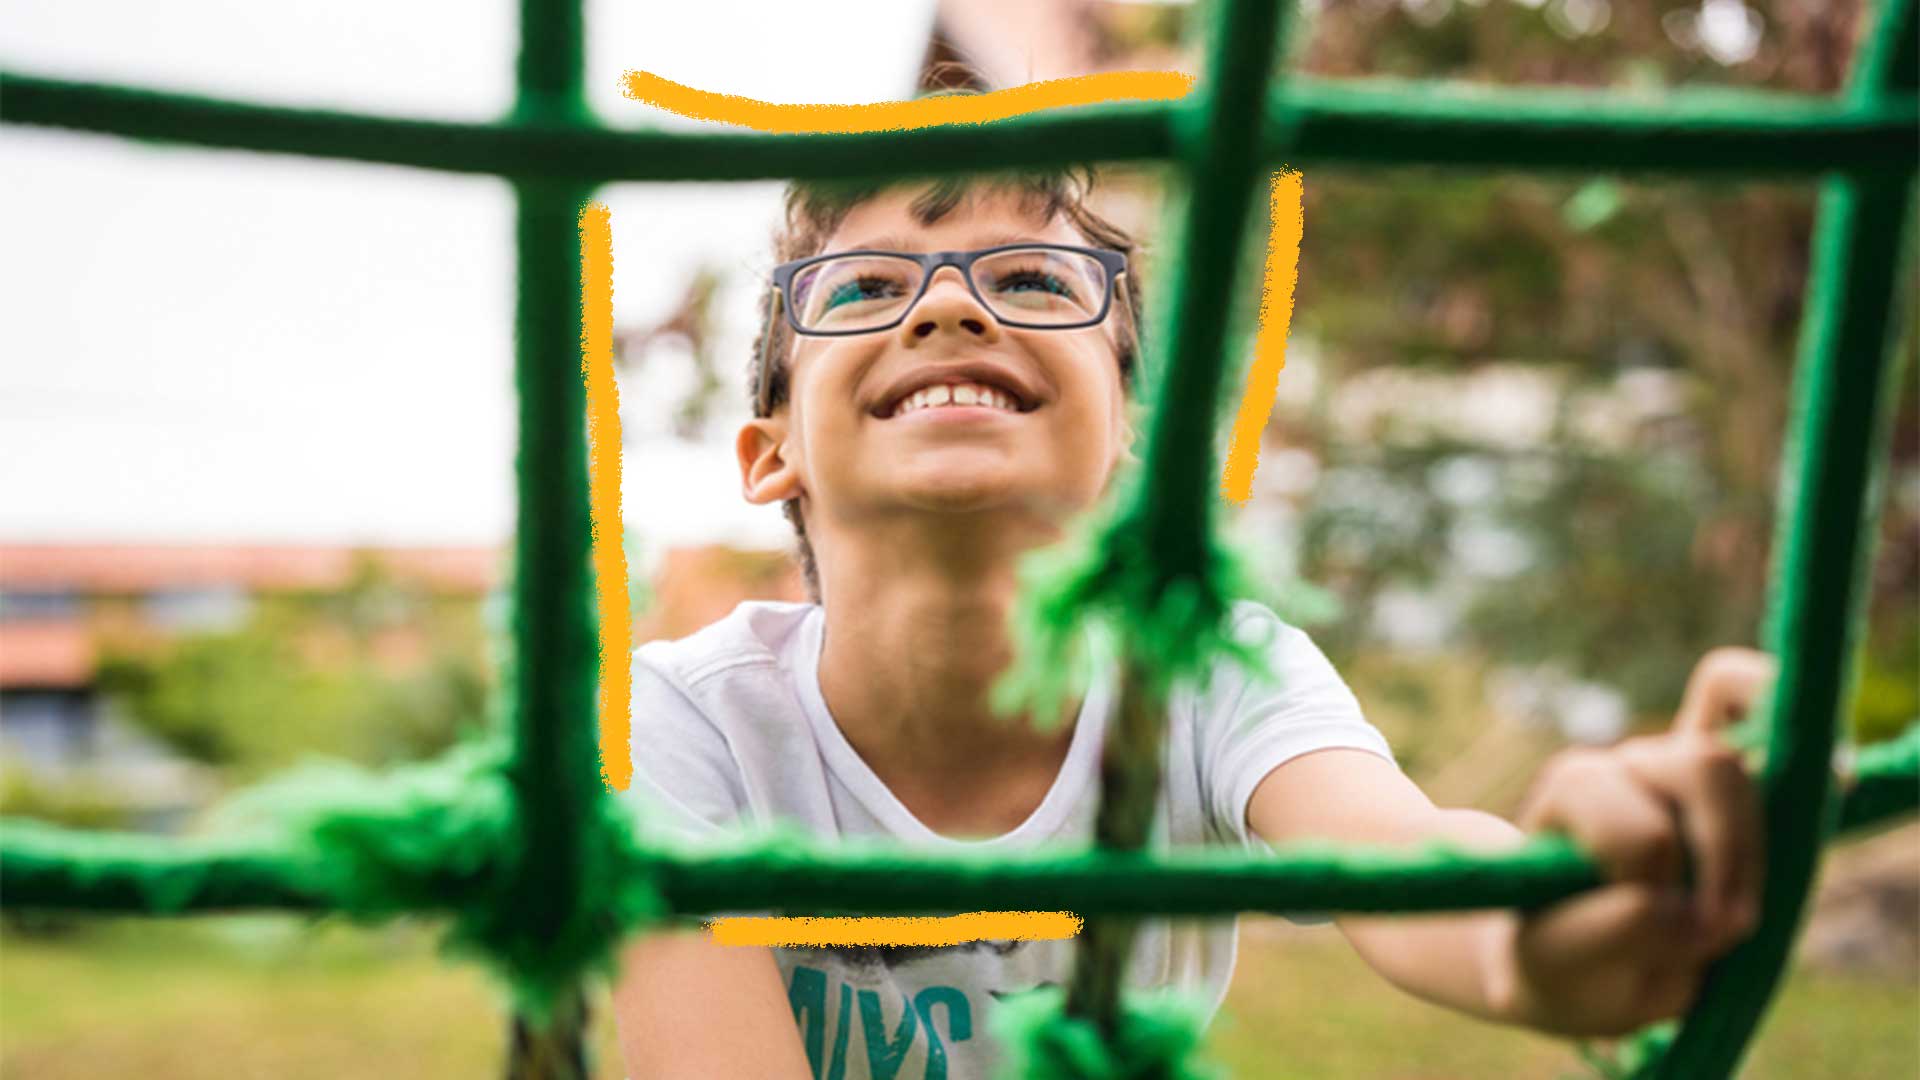 Foto de um menino com óculos sorrindo e subindo em uma corda na cor verde